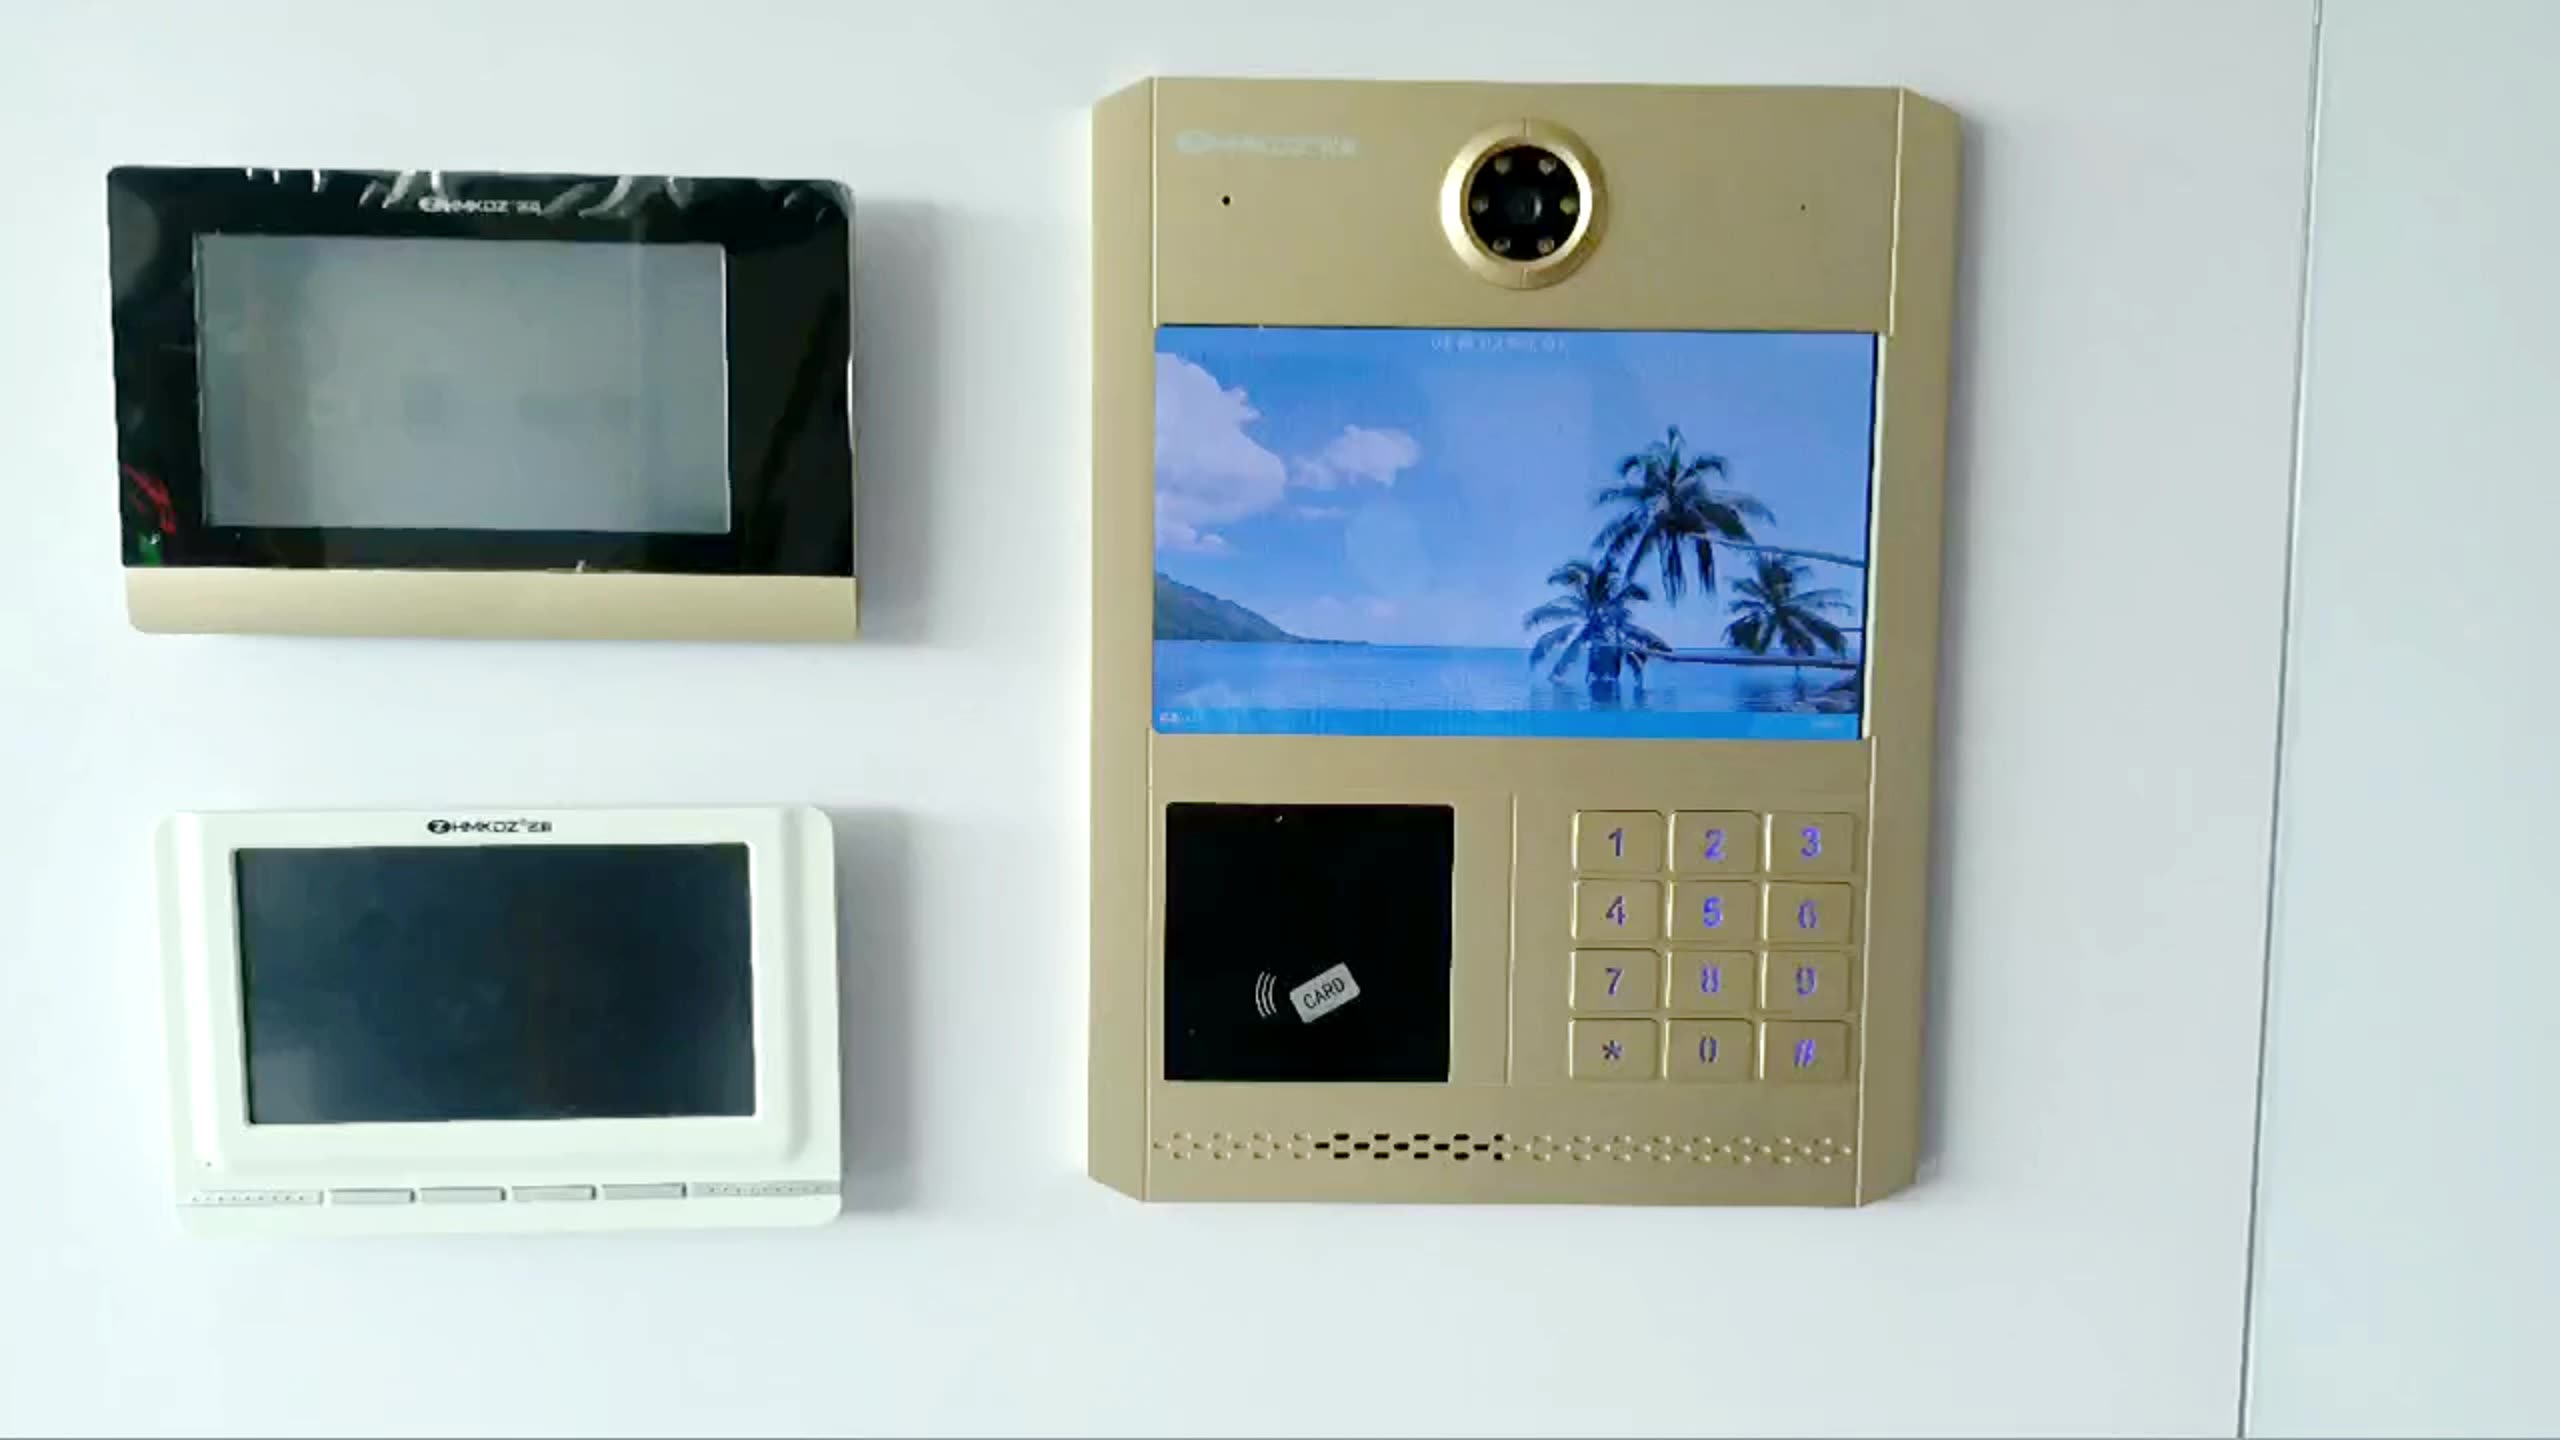 Diseño moderno de 10.1 pulgadas Botón físico Botón de desbloqueo Sistema de video Intercomitorio Video Cámara Puerta Phone1